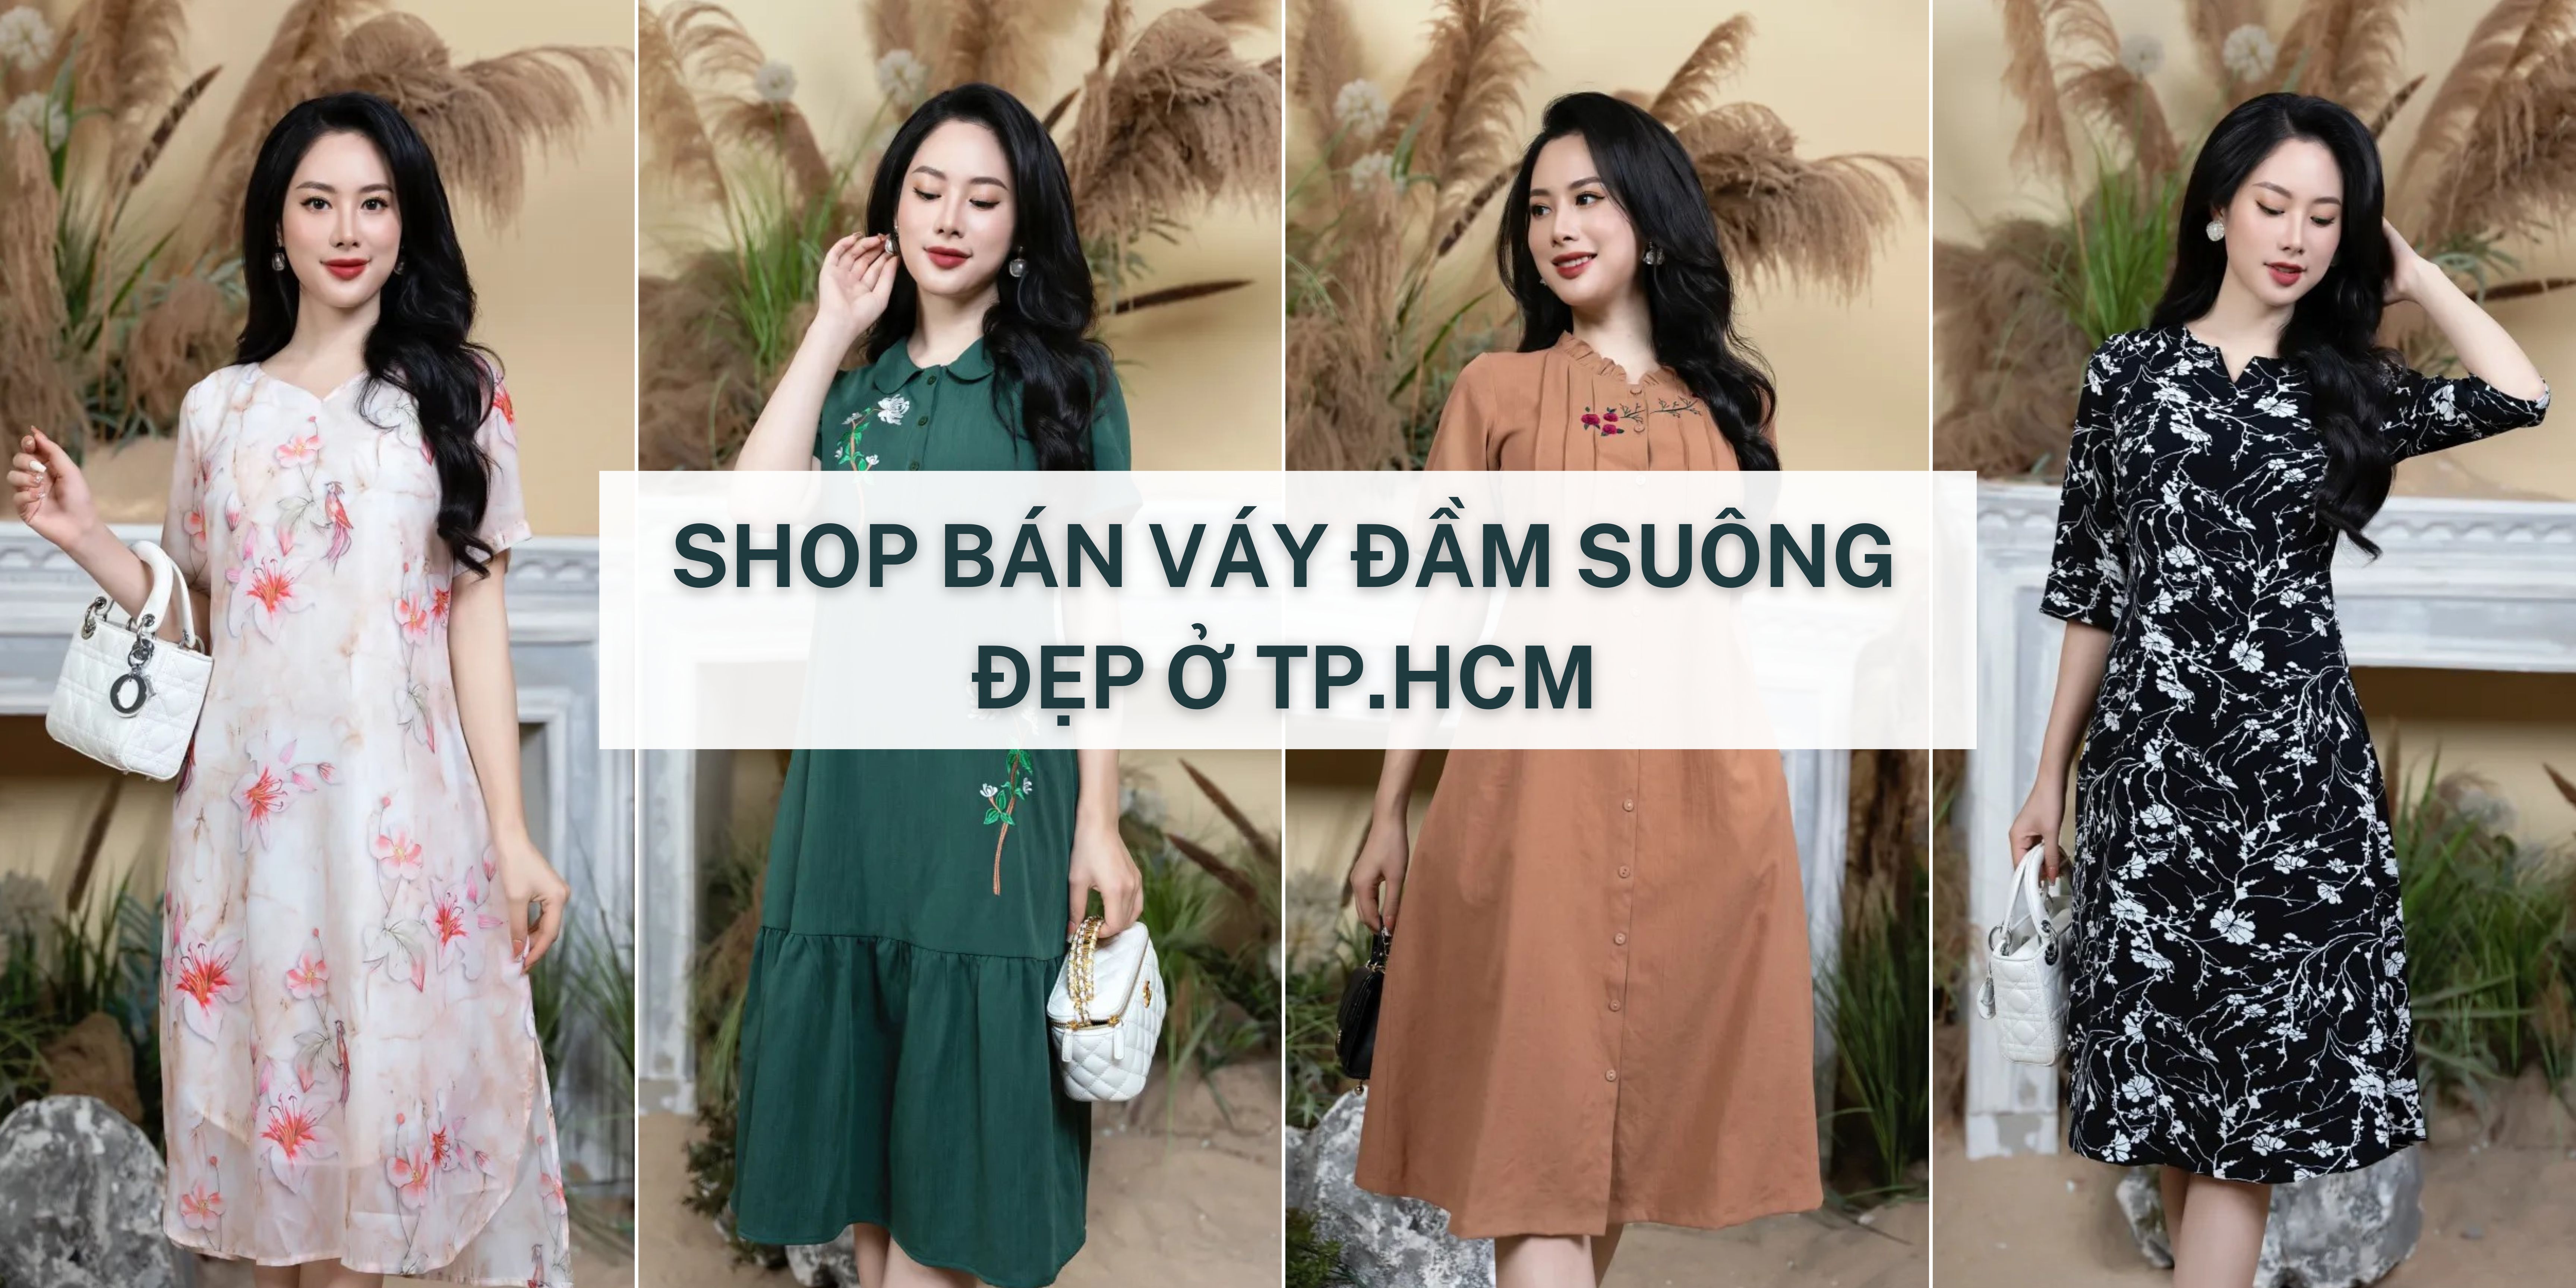 Top 10 shop bán váy đầm suông ở TP.HCM rẻ - đẹp - chất lượng